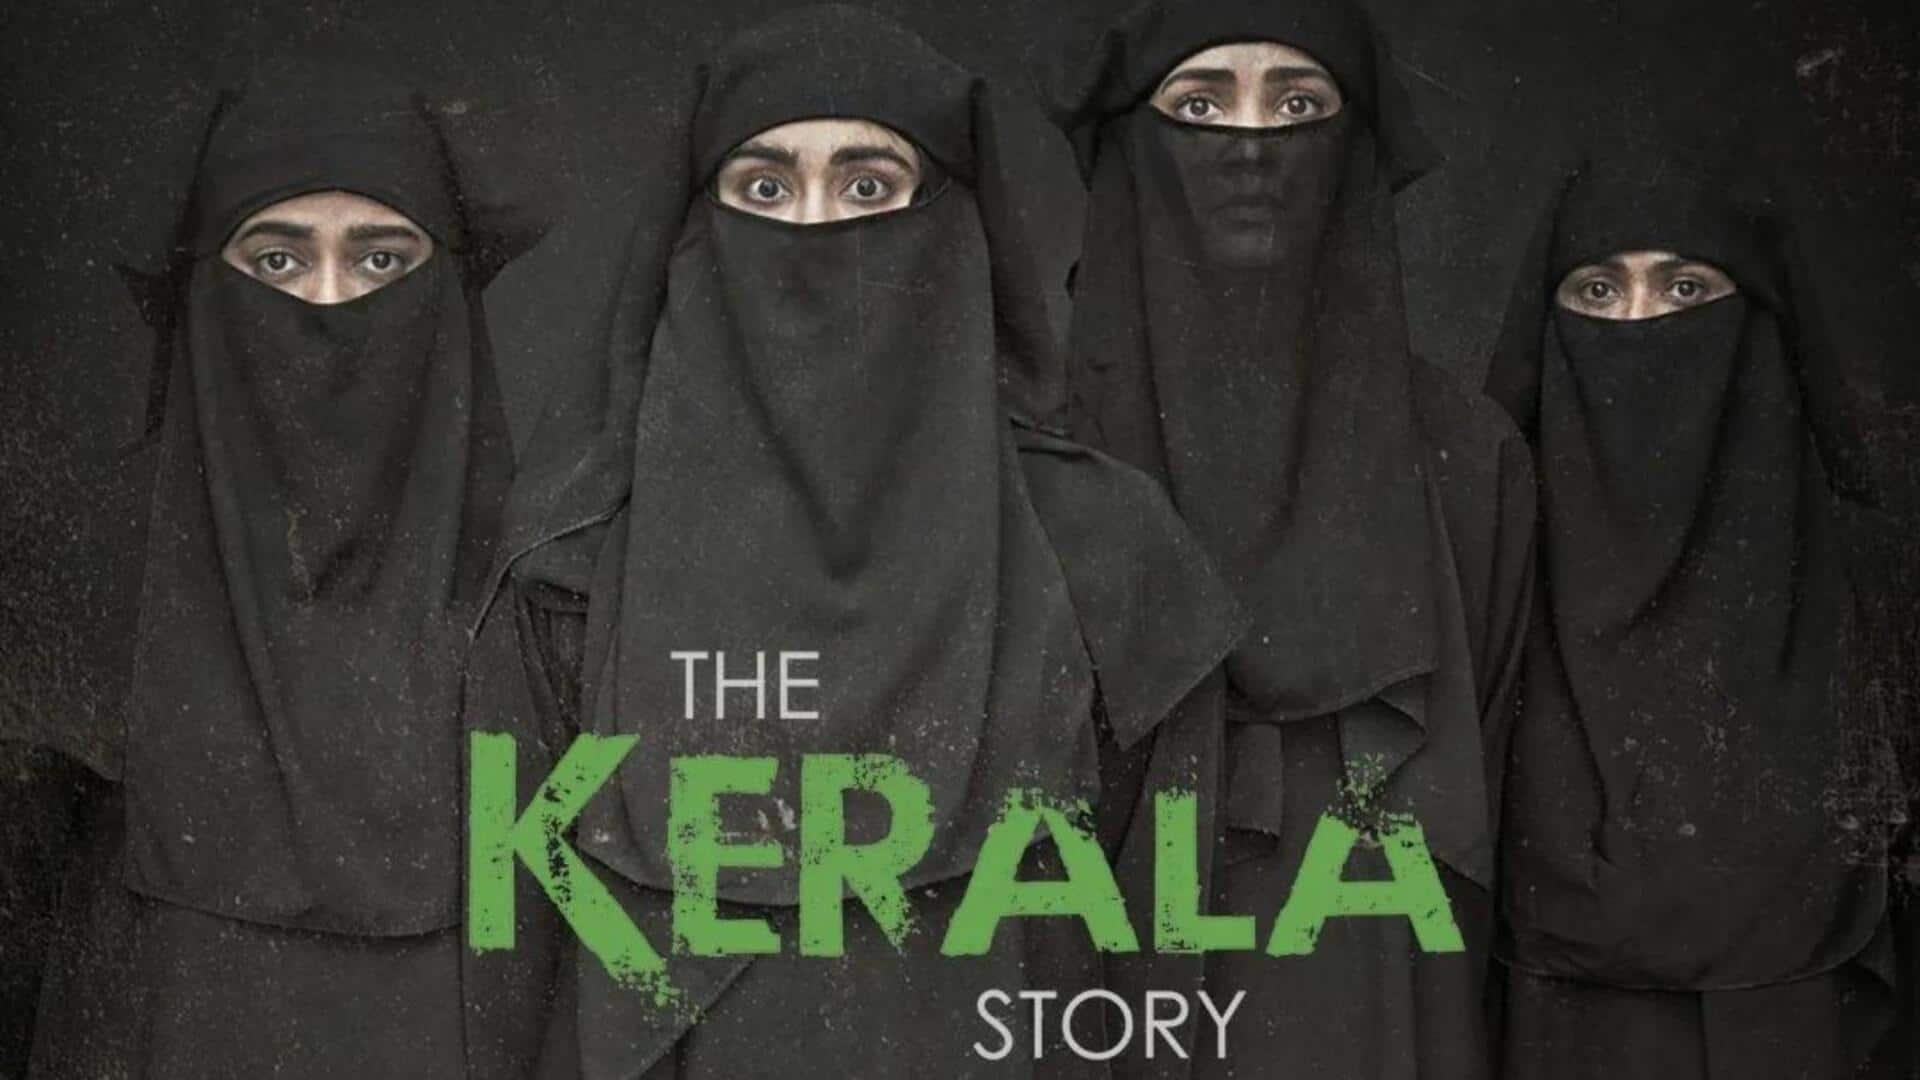 तमिलनाडु में आज से नहीं दिखाई जाएगी 'द केरल स्टोरी', विरोध के चलते लिया फैसला